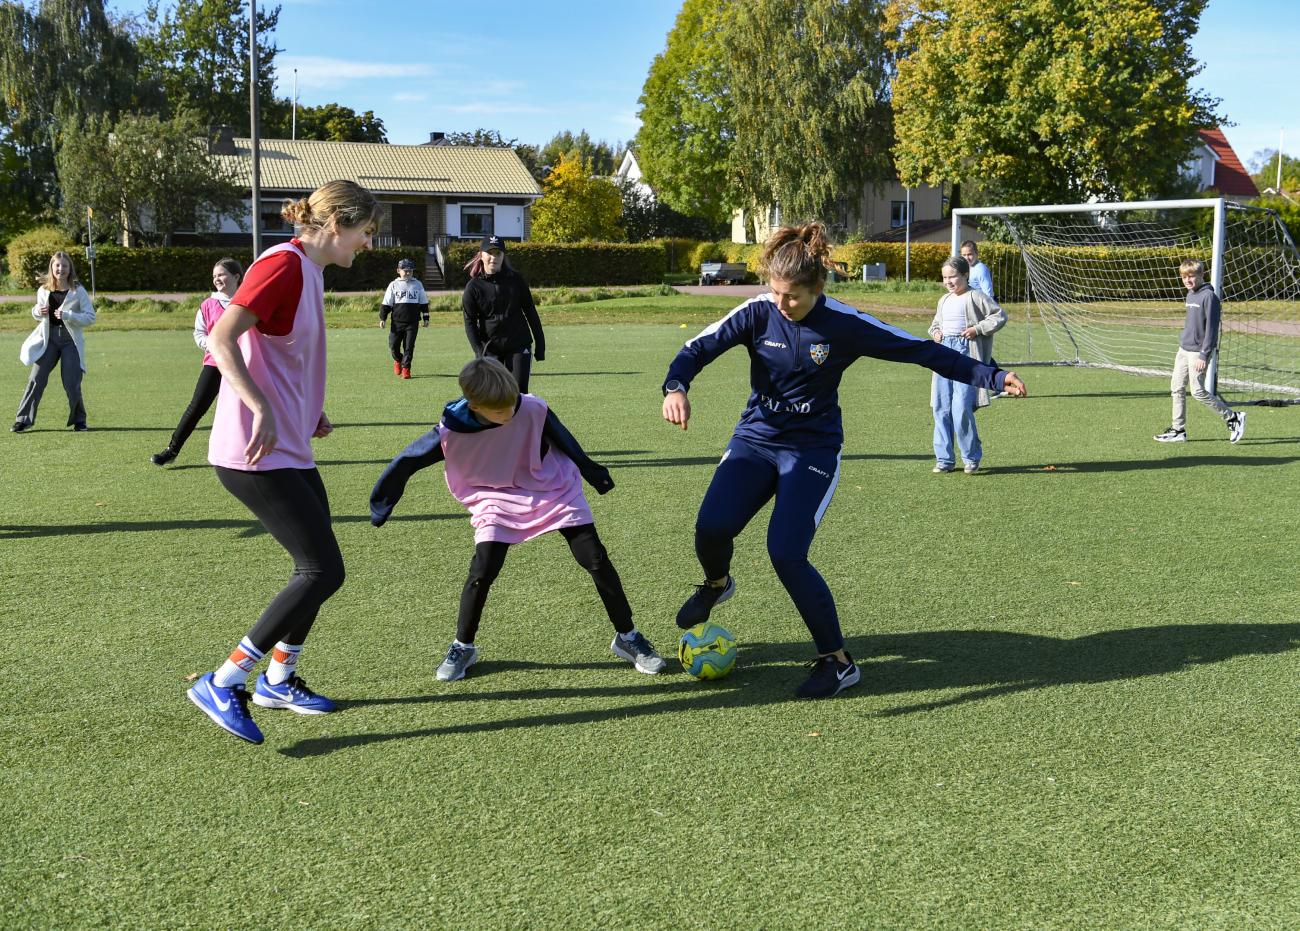 lla elever i stadens skolor hade i går möjlighet att spela fotboll med spelare från IFK Mariehamn och Åland United. Här är det elever i klass 4 i Strandnäs som spelar med Sarah Troccoli till vänster och Mathilda Nurmi till höger.